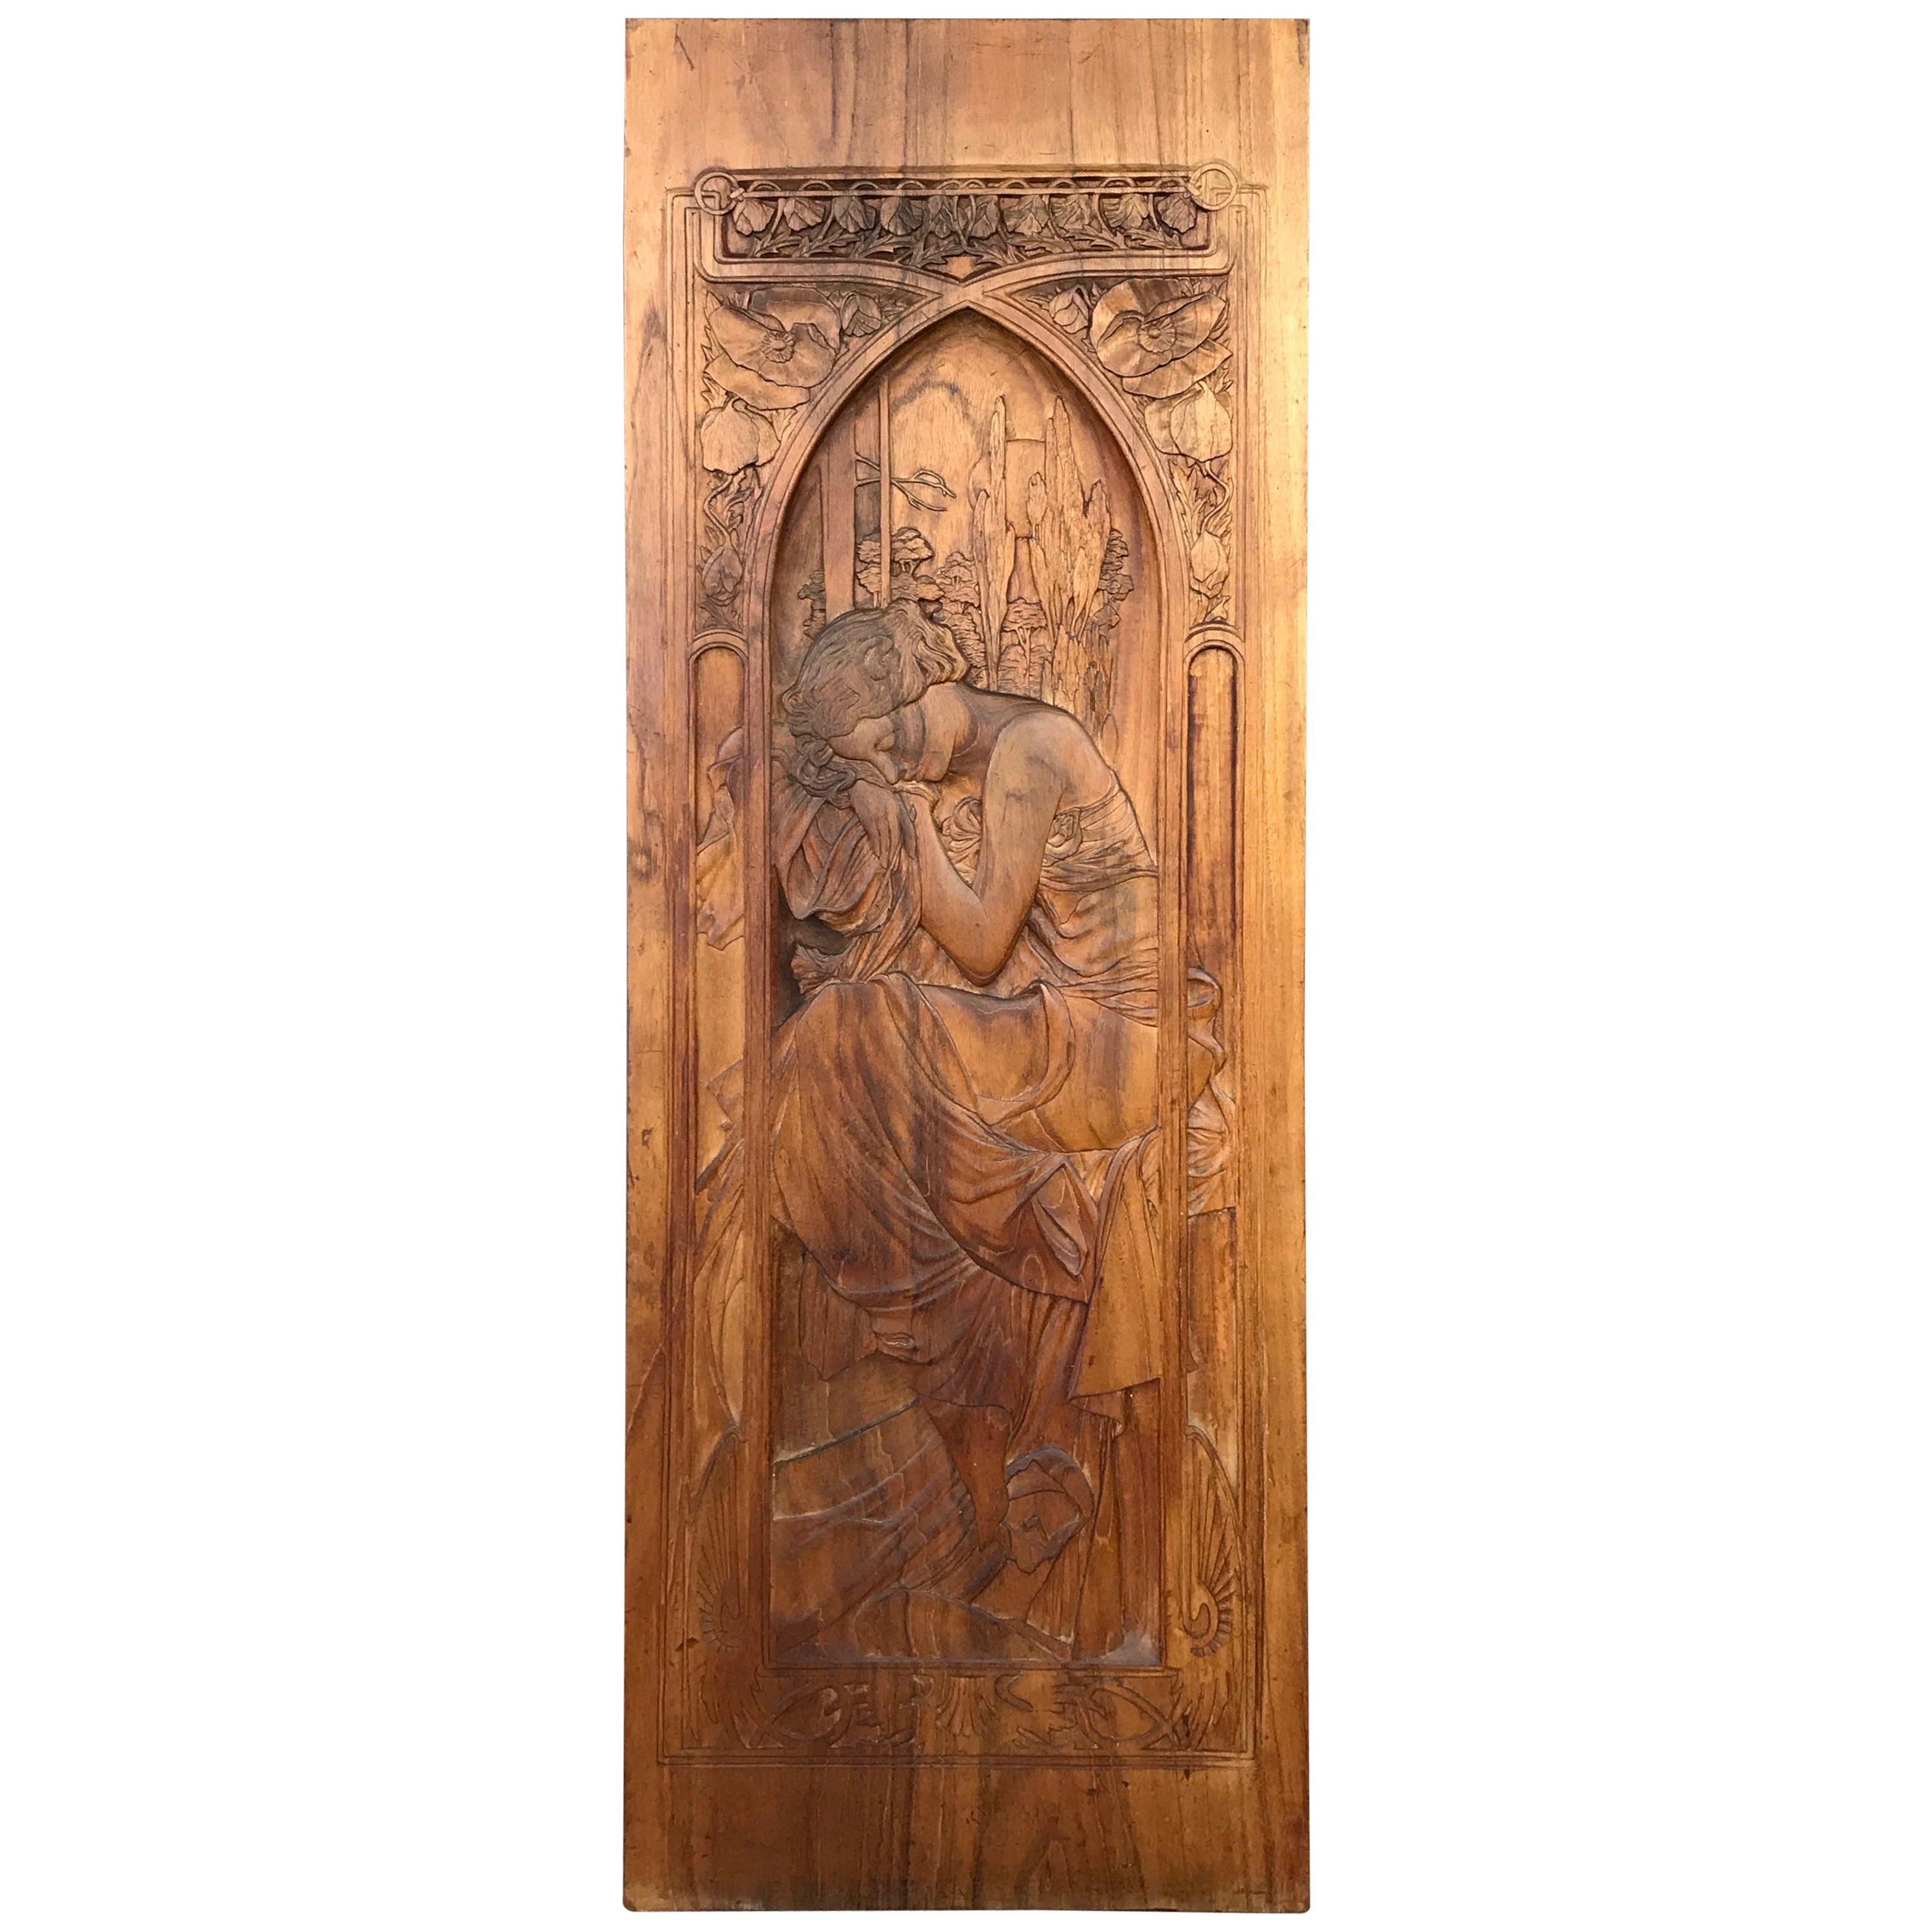 Art Nouveau Carved Wood Panel after Alphonse Mucha’s “Repos de la Nuit”